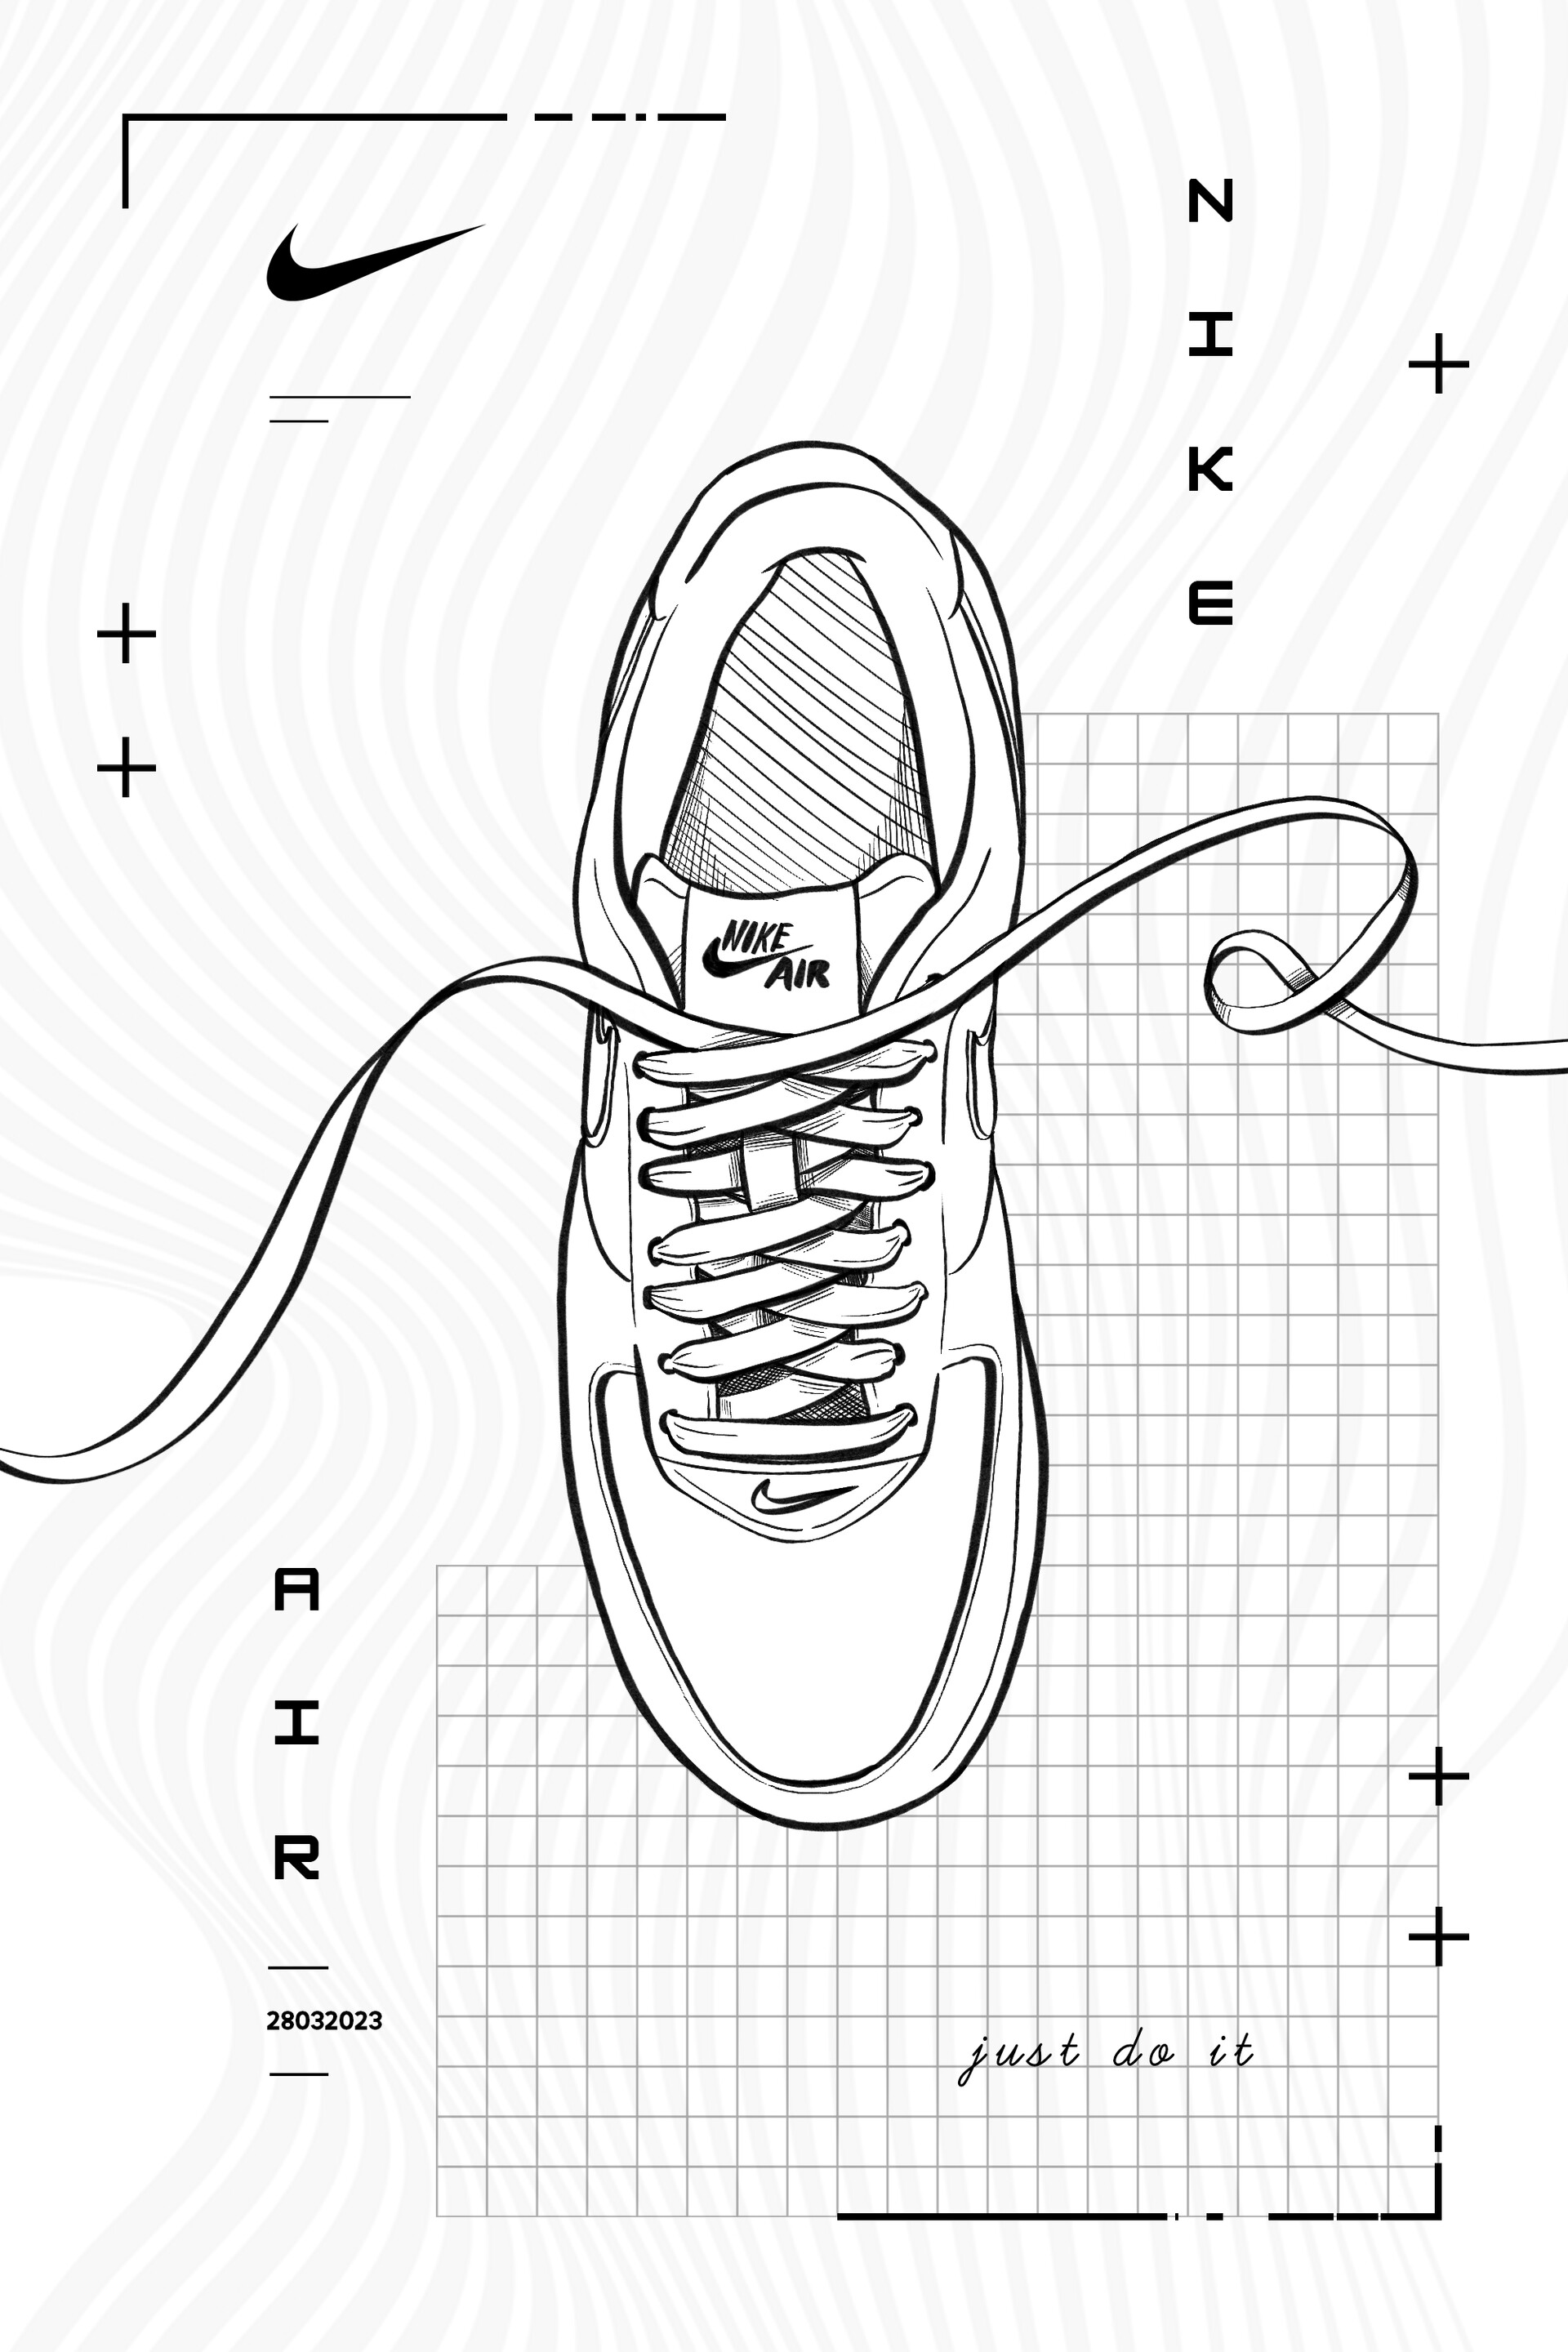 ArtStation - Nike Poster Design 3